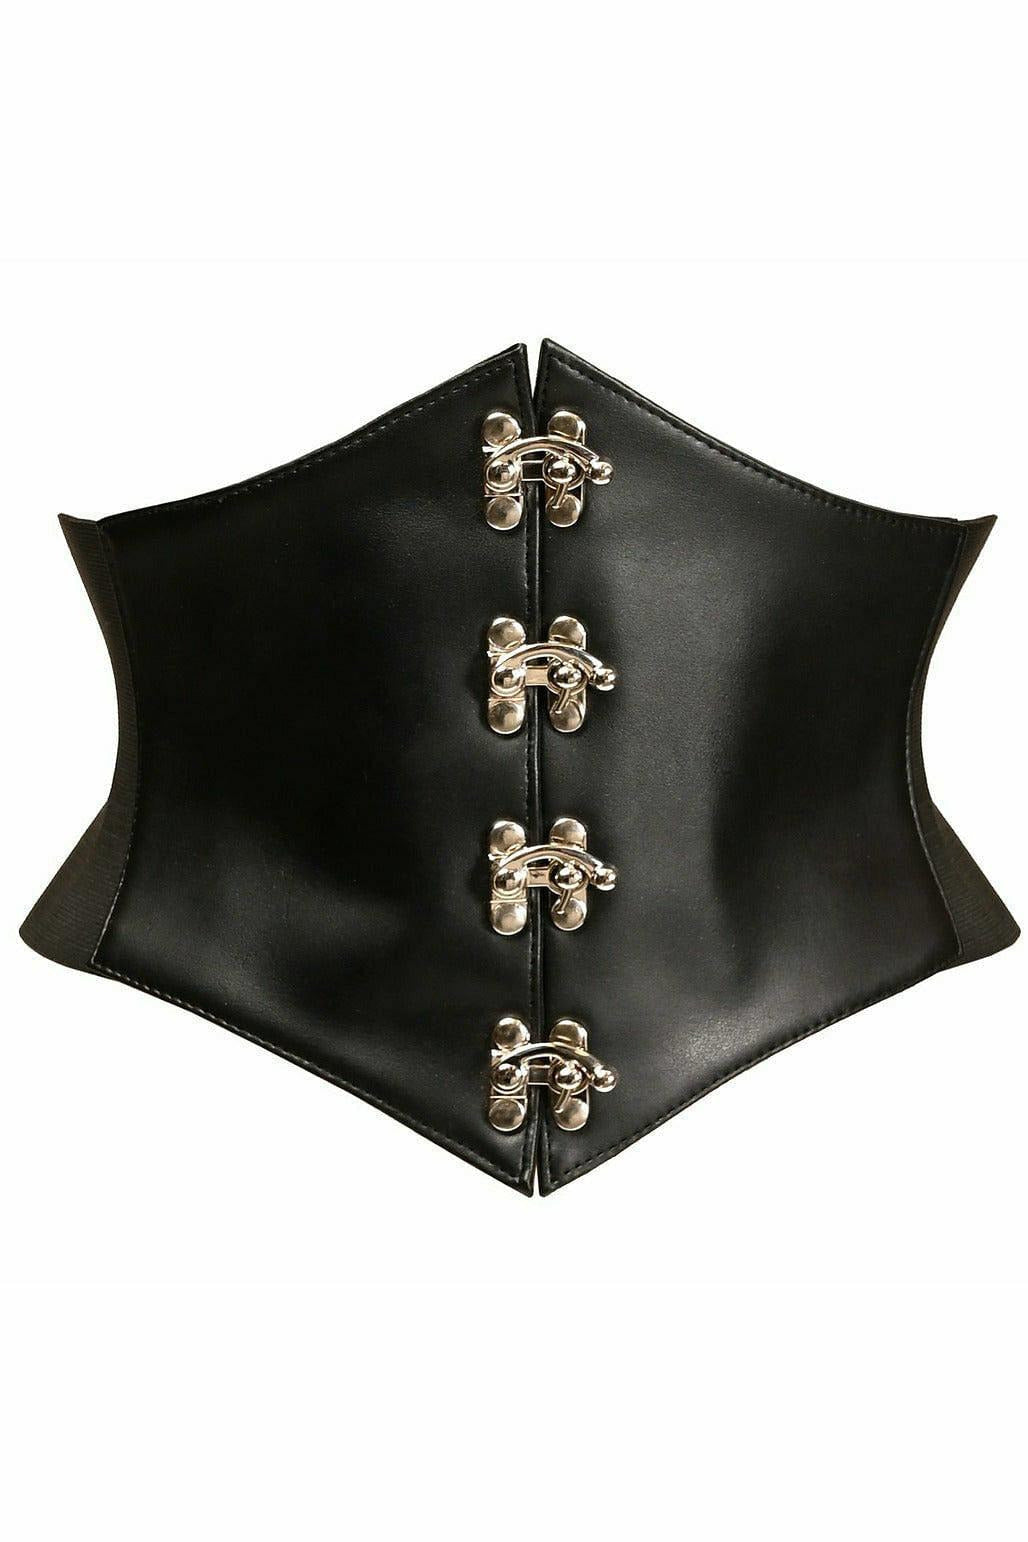 Lavish Black Faux Leather Corset Belt Cincher w/Clasps-Daisy Corsets